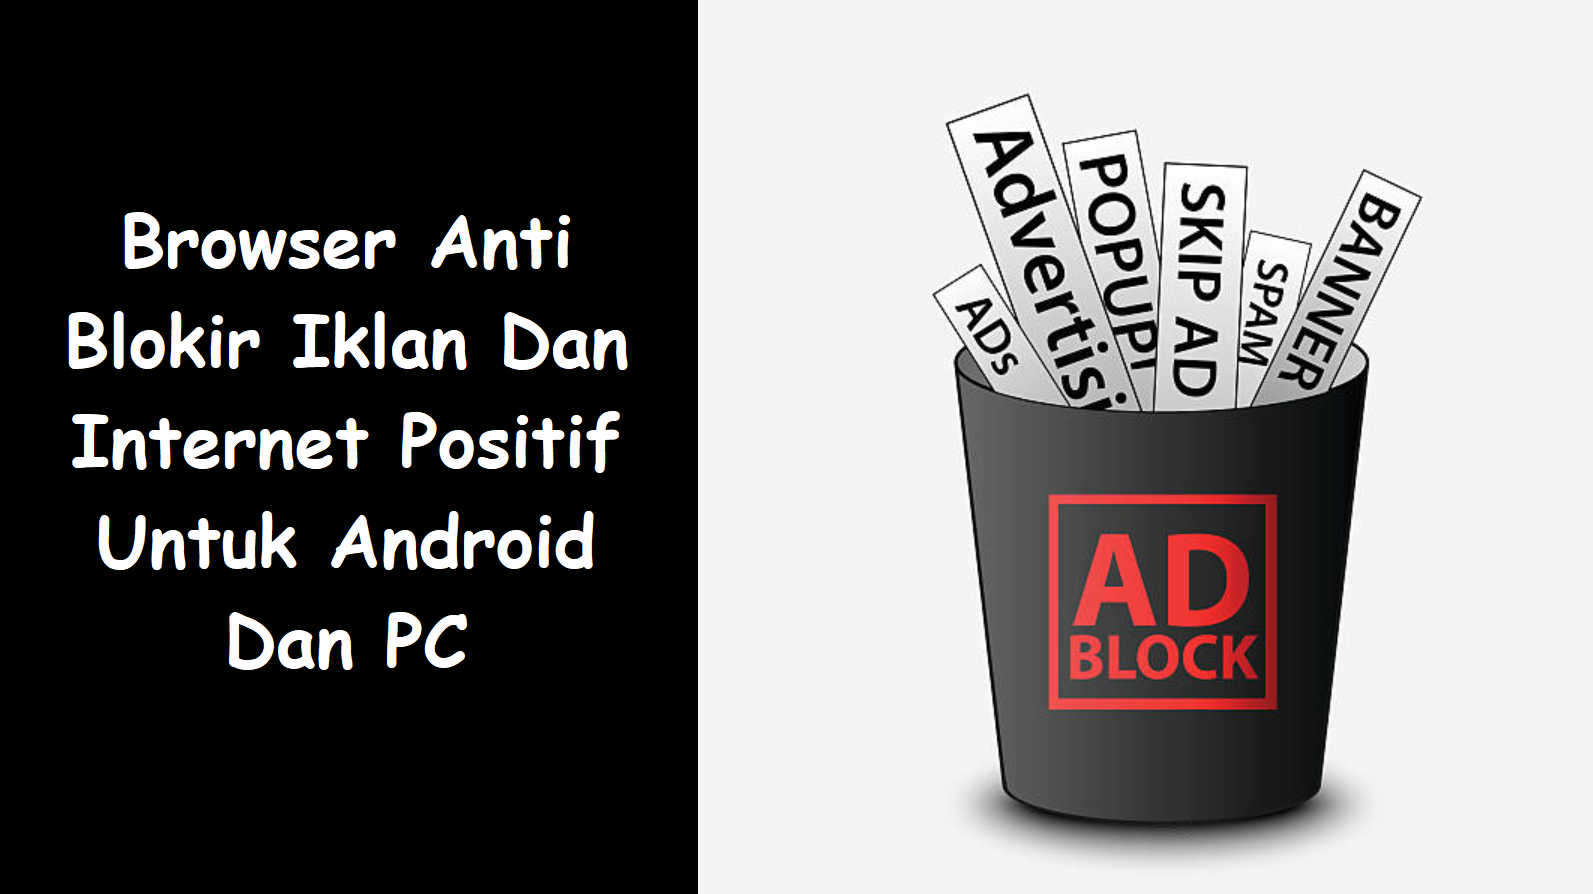 Browser Anti Blokir Iklan Dan Internet Positif Untuk Android Dan PC